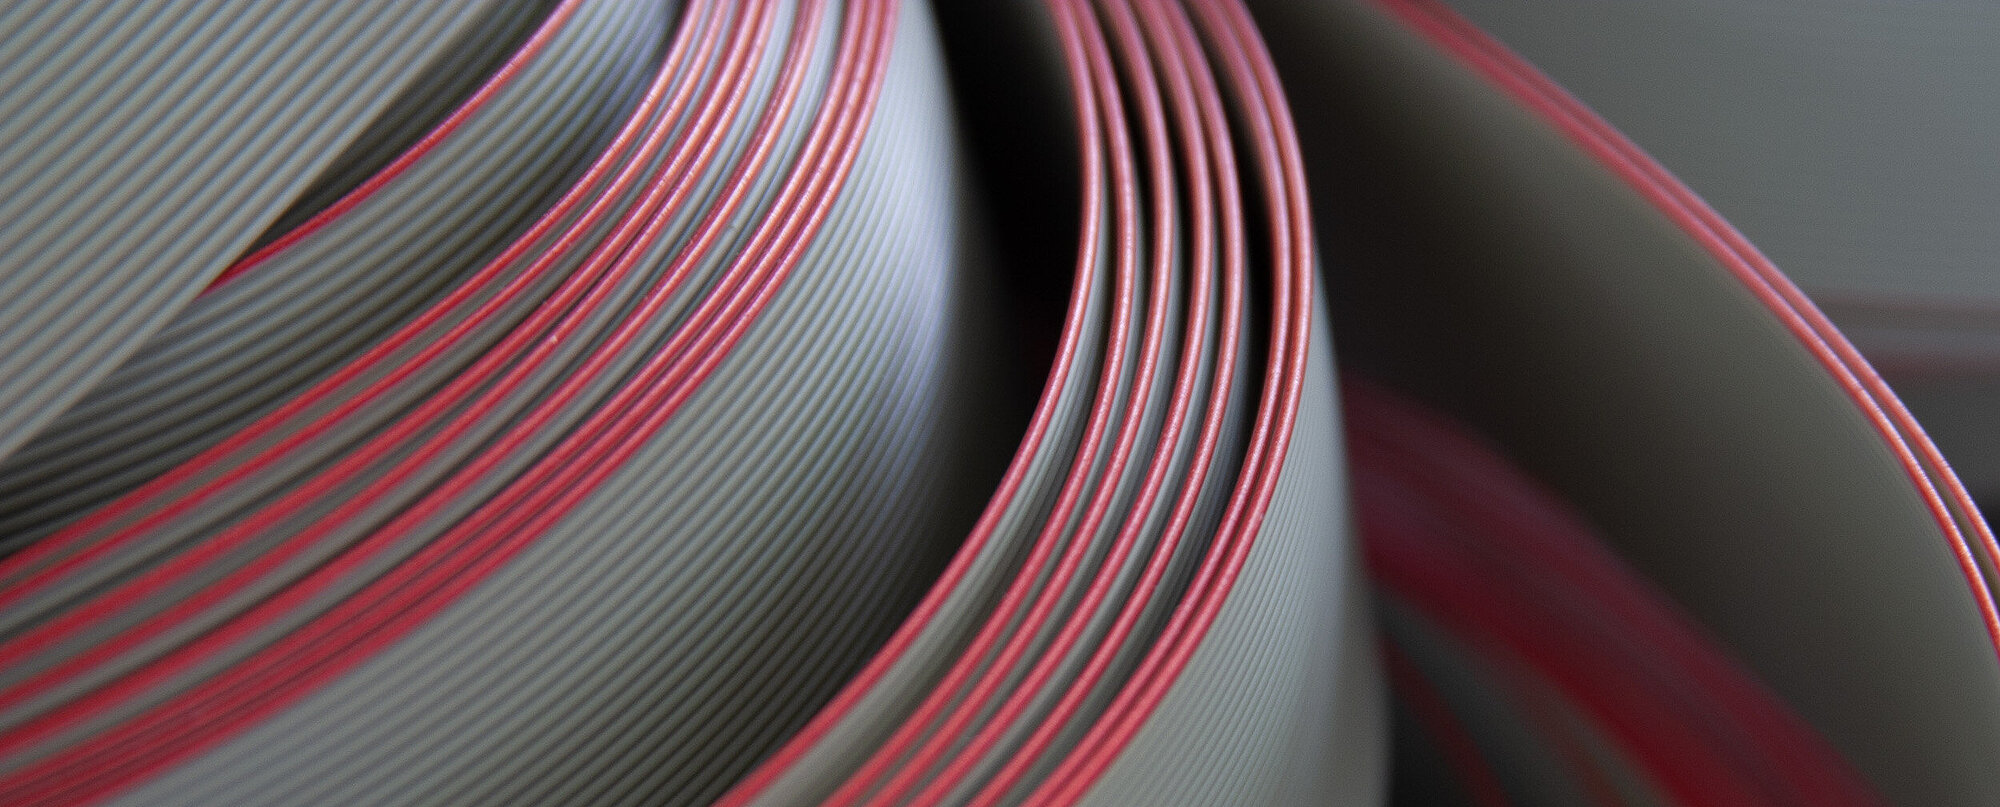 Flachband Kabel in rot und grau